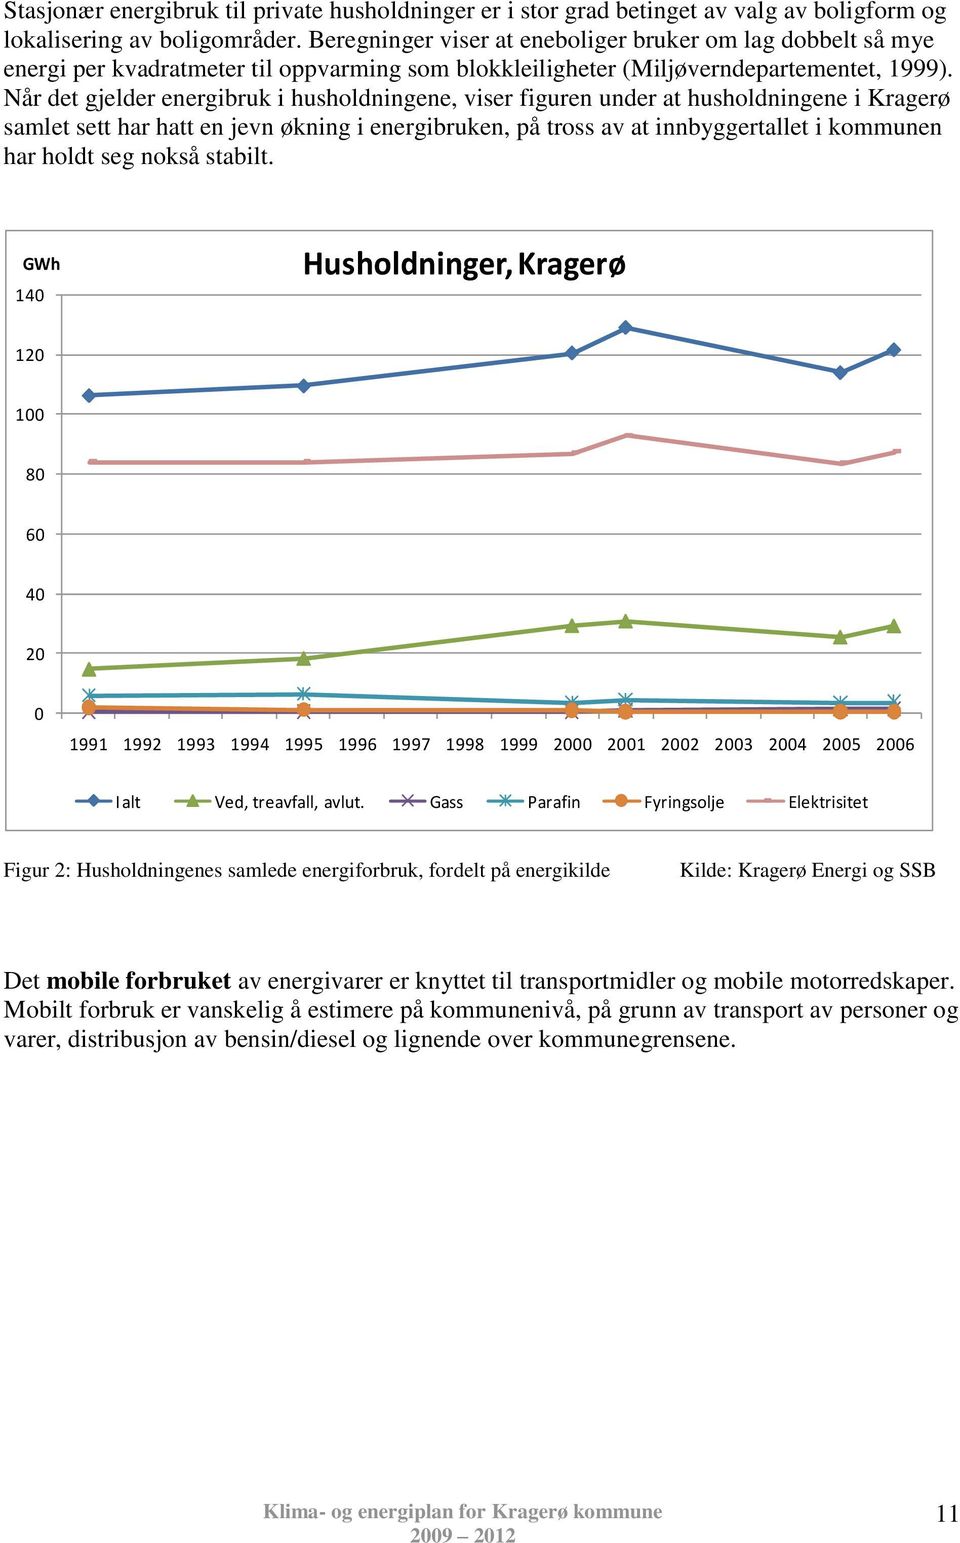 Når det gjelder energibruk i husholdningene, viser figuren under at husholdningene i Kragerø samlet sett har hatt en jevn økning i energibruken, på tross av at innbyggertallet i kommunen har holdt